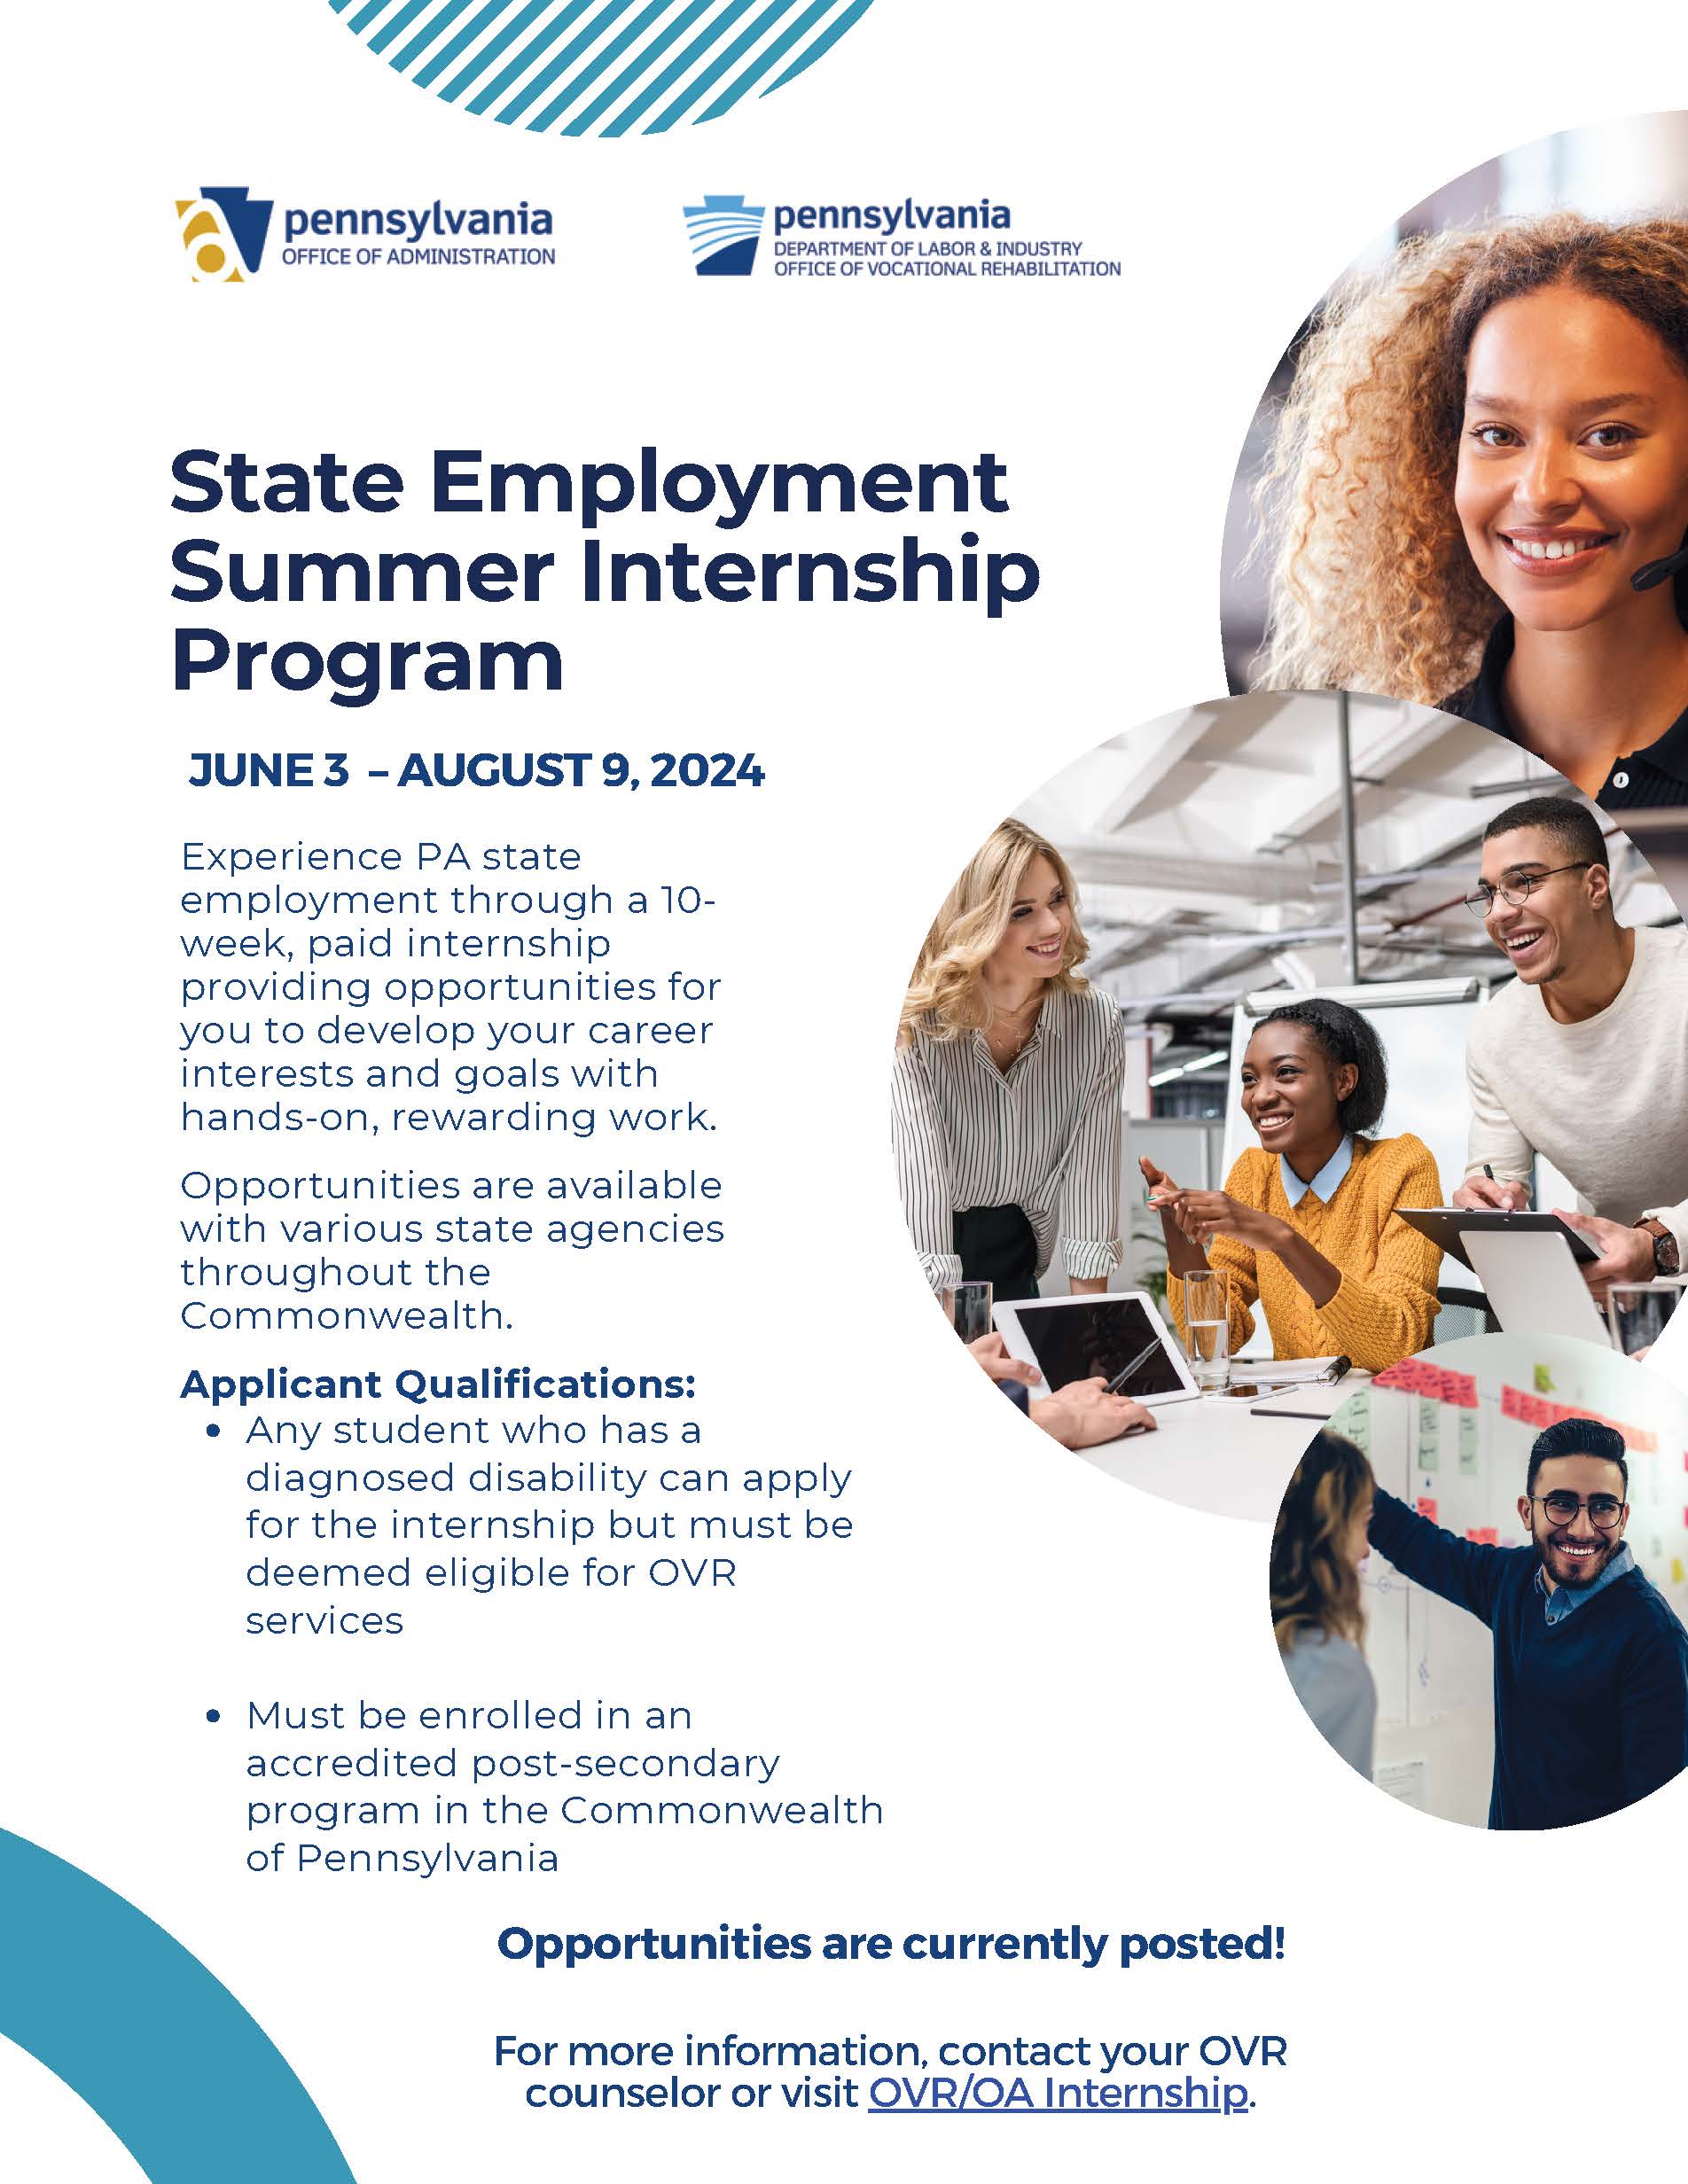 State Employment Summer Internship Program  Flyer
